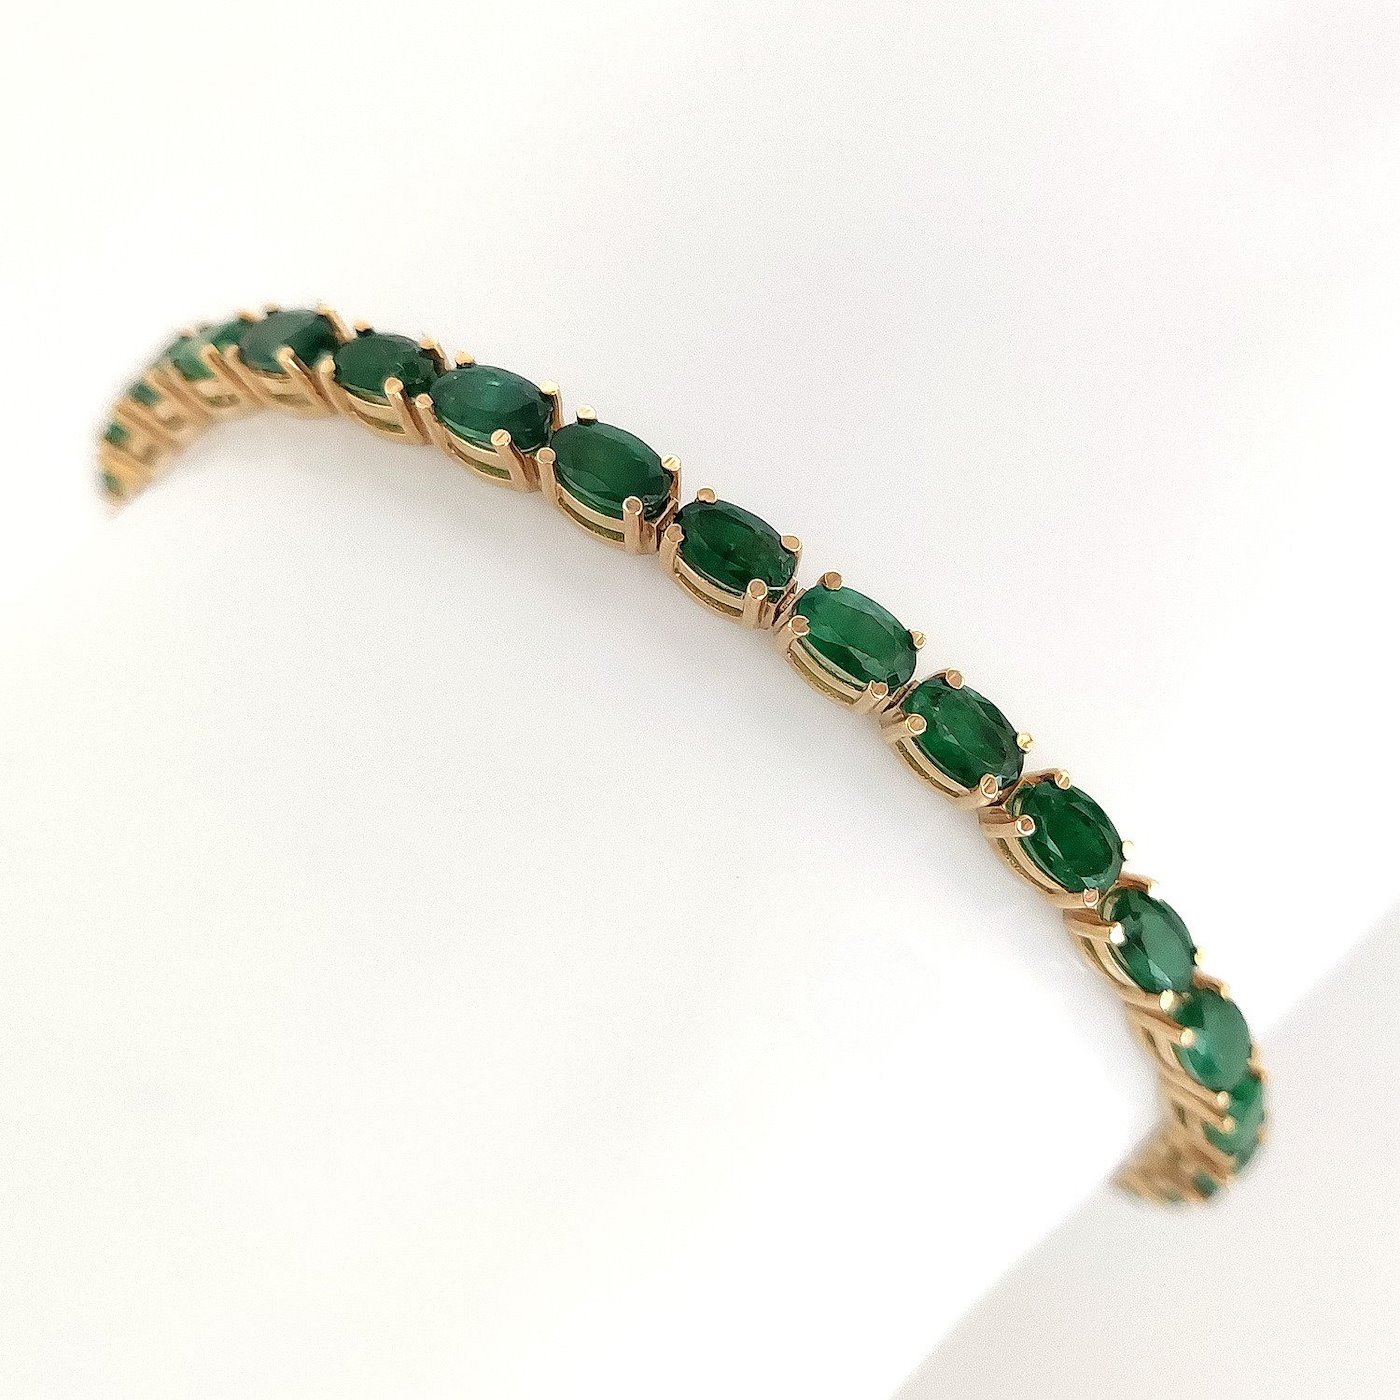 .. - Luxusní náramek se smaragdy, zlato 585/1000, značeno platnou puncovní značkou, hrubá hmotnost 8,66 g